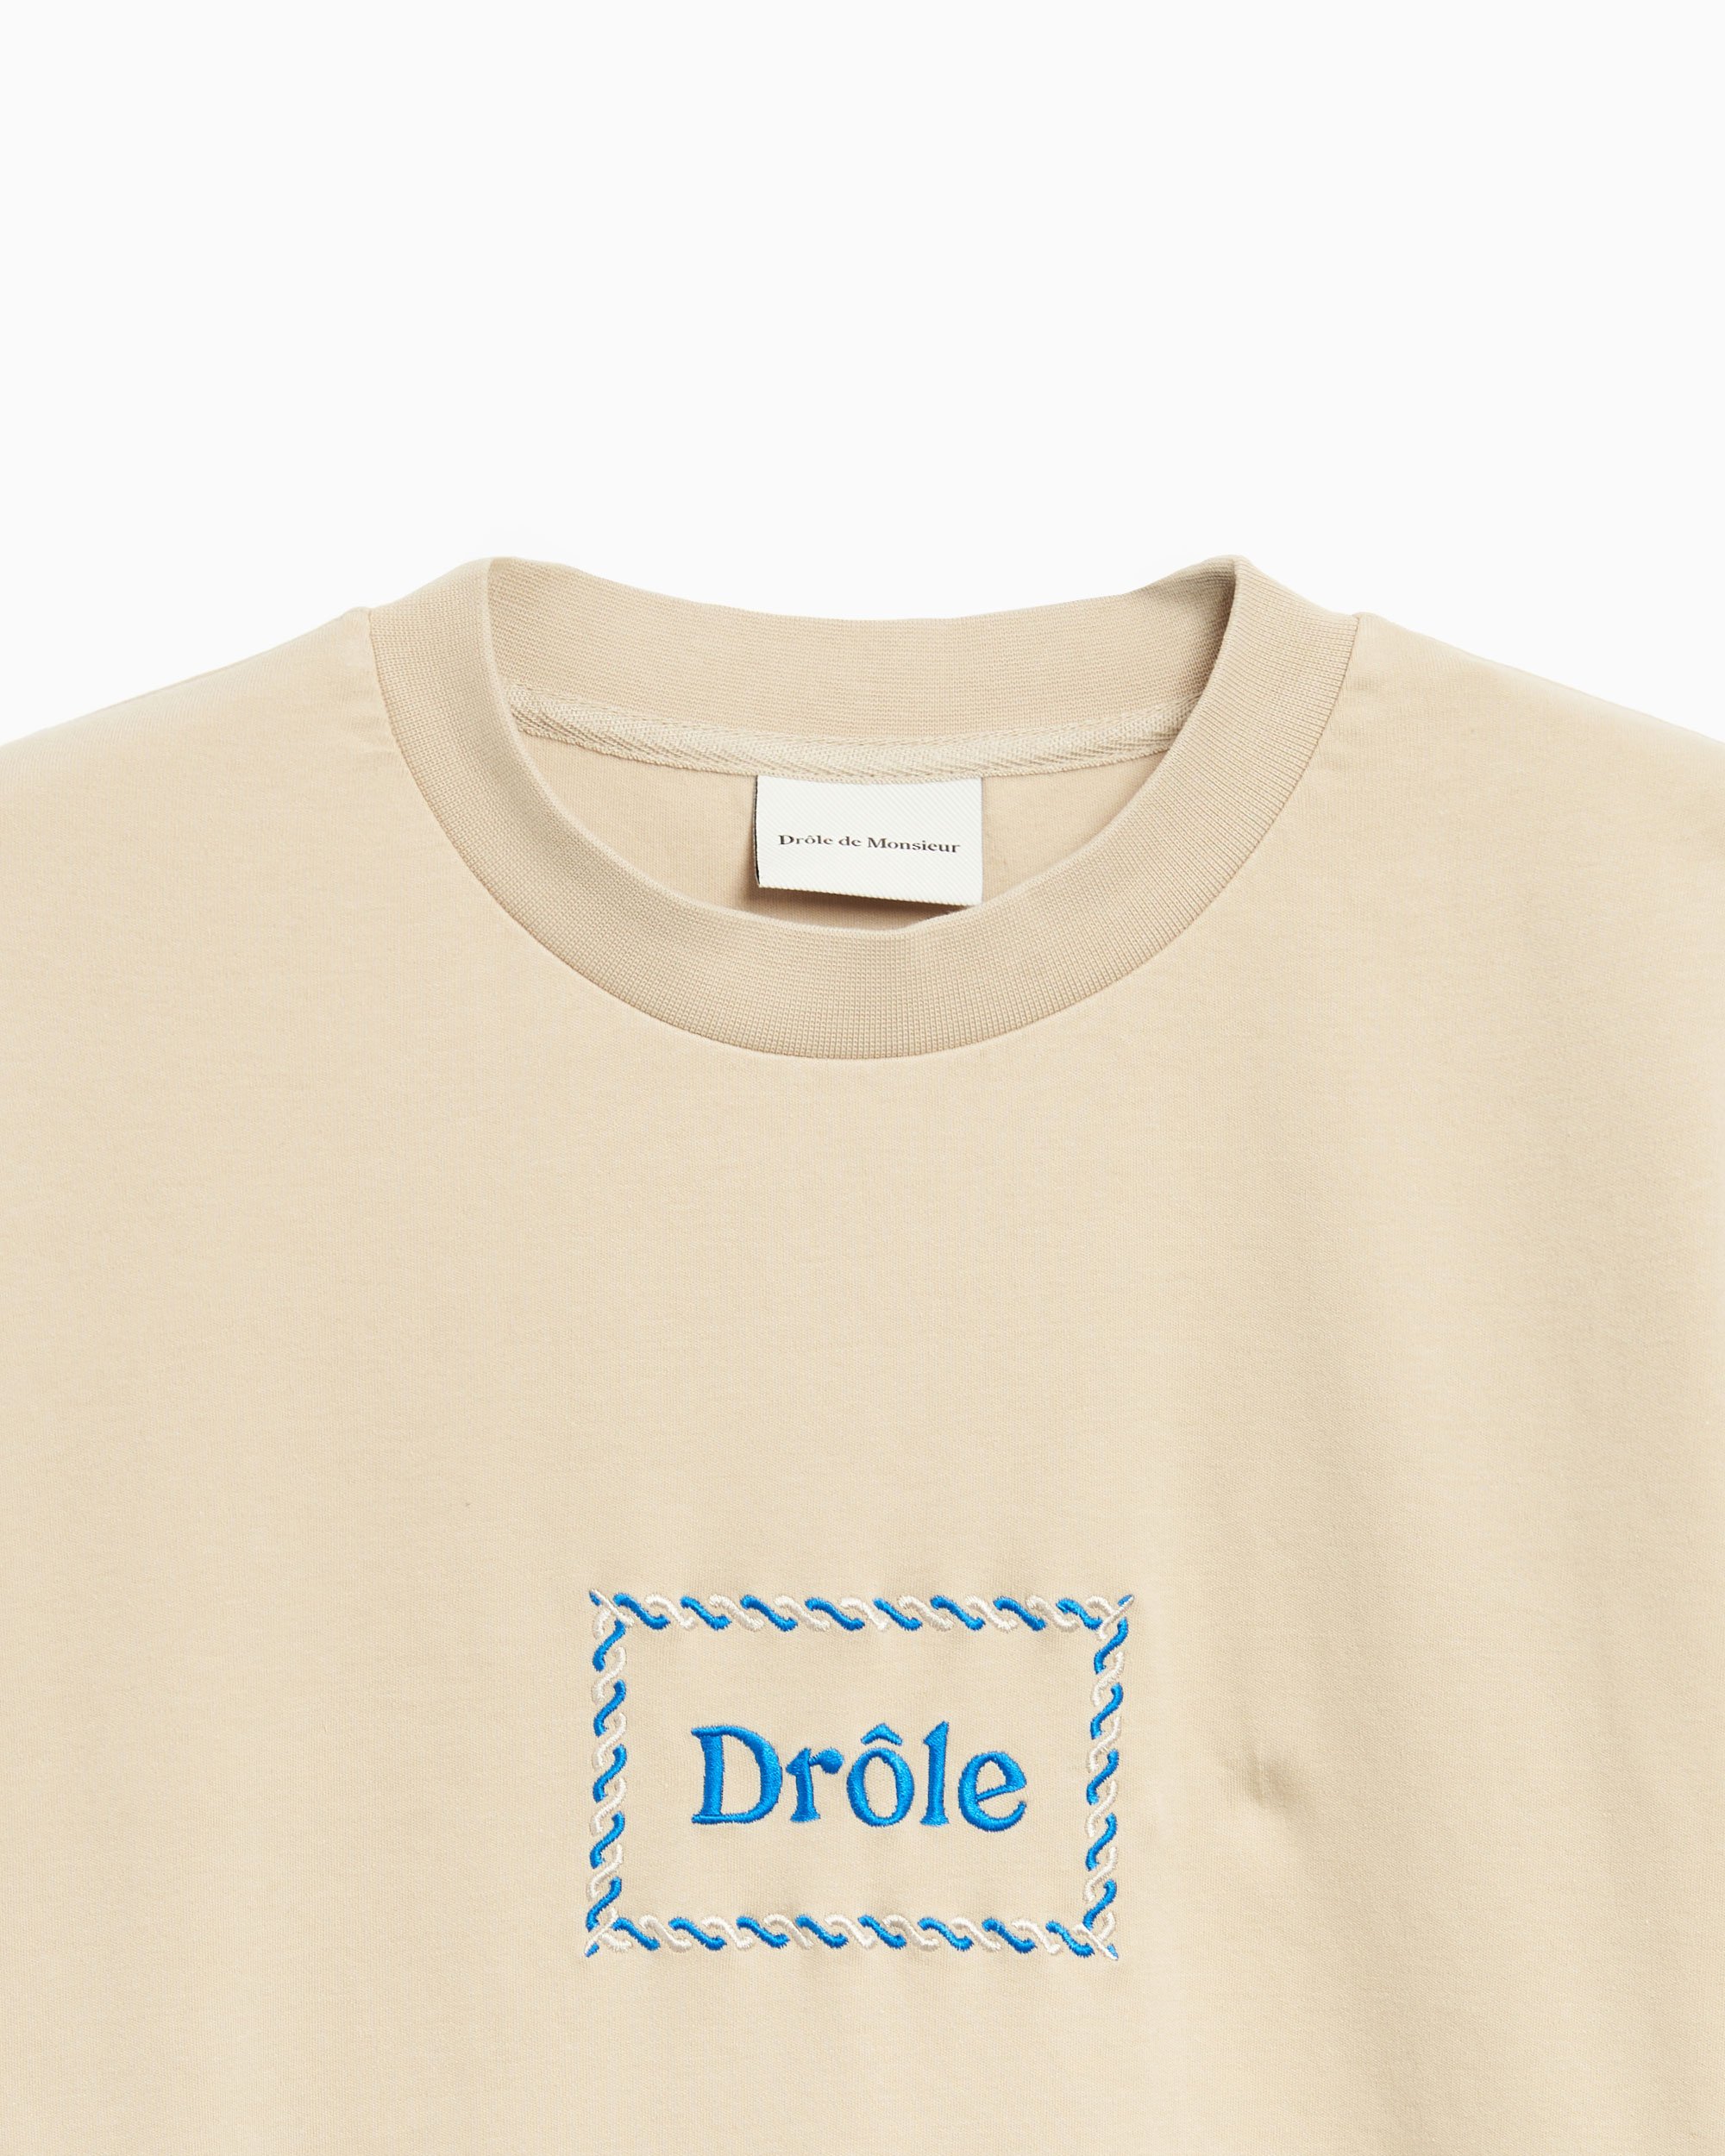 Drôle de Monsieur Drôle Men's T-Shirt Beige TS187-CO002-TA 